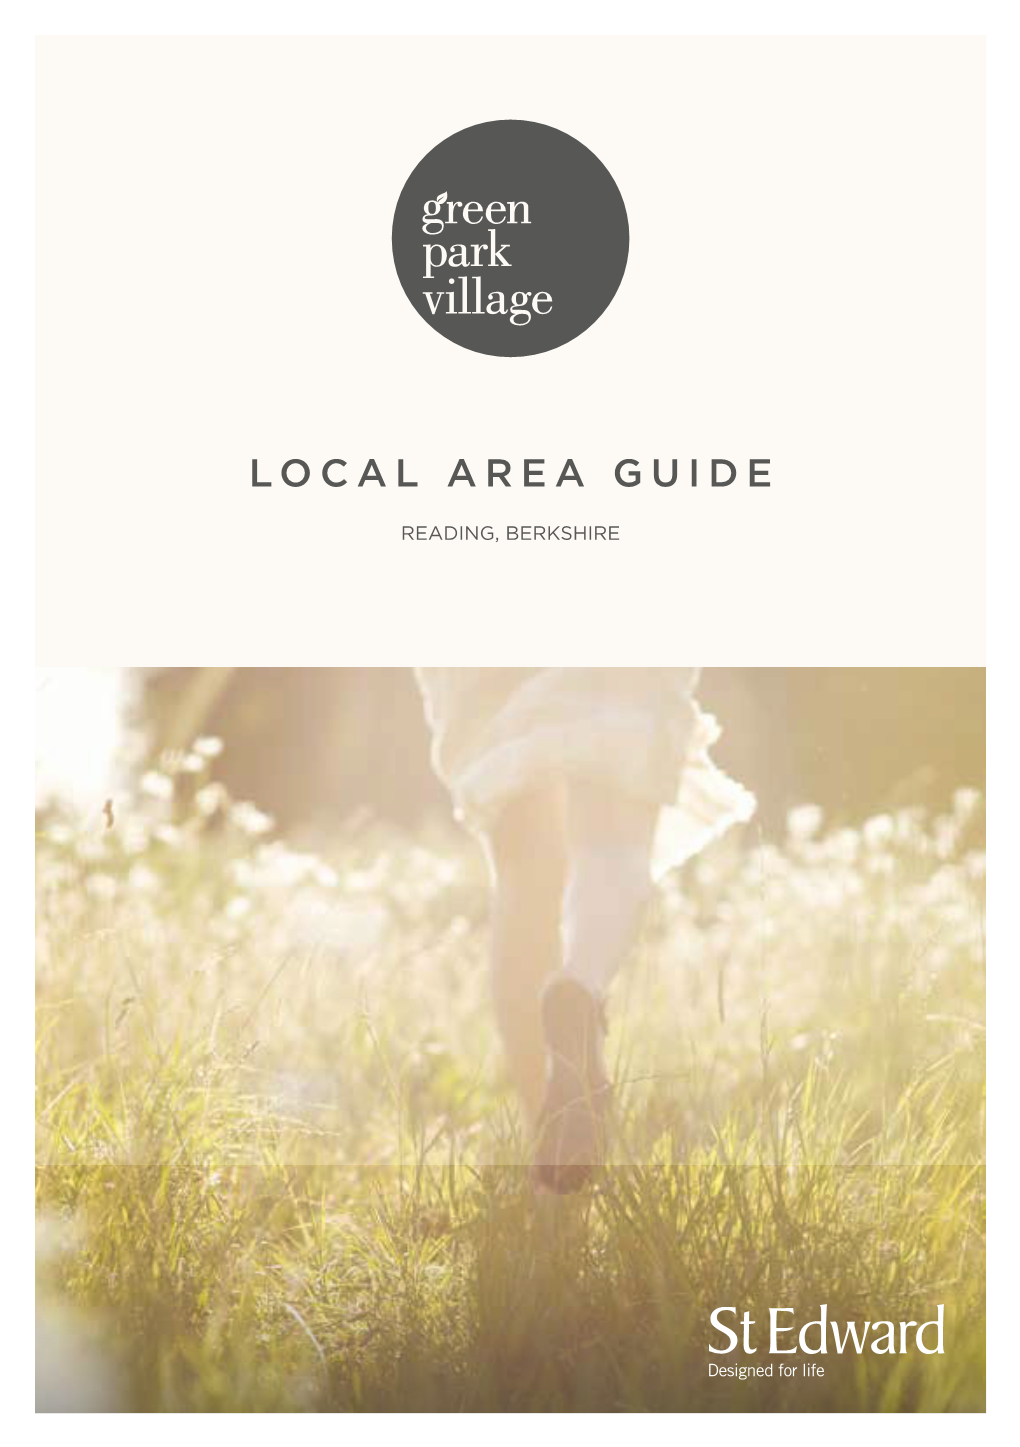 Local Area Guide